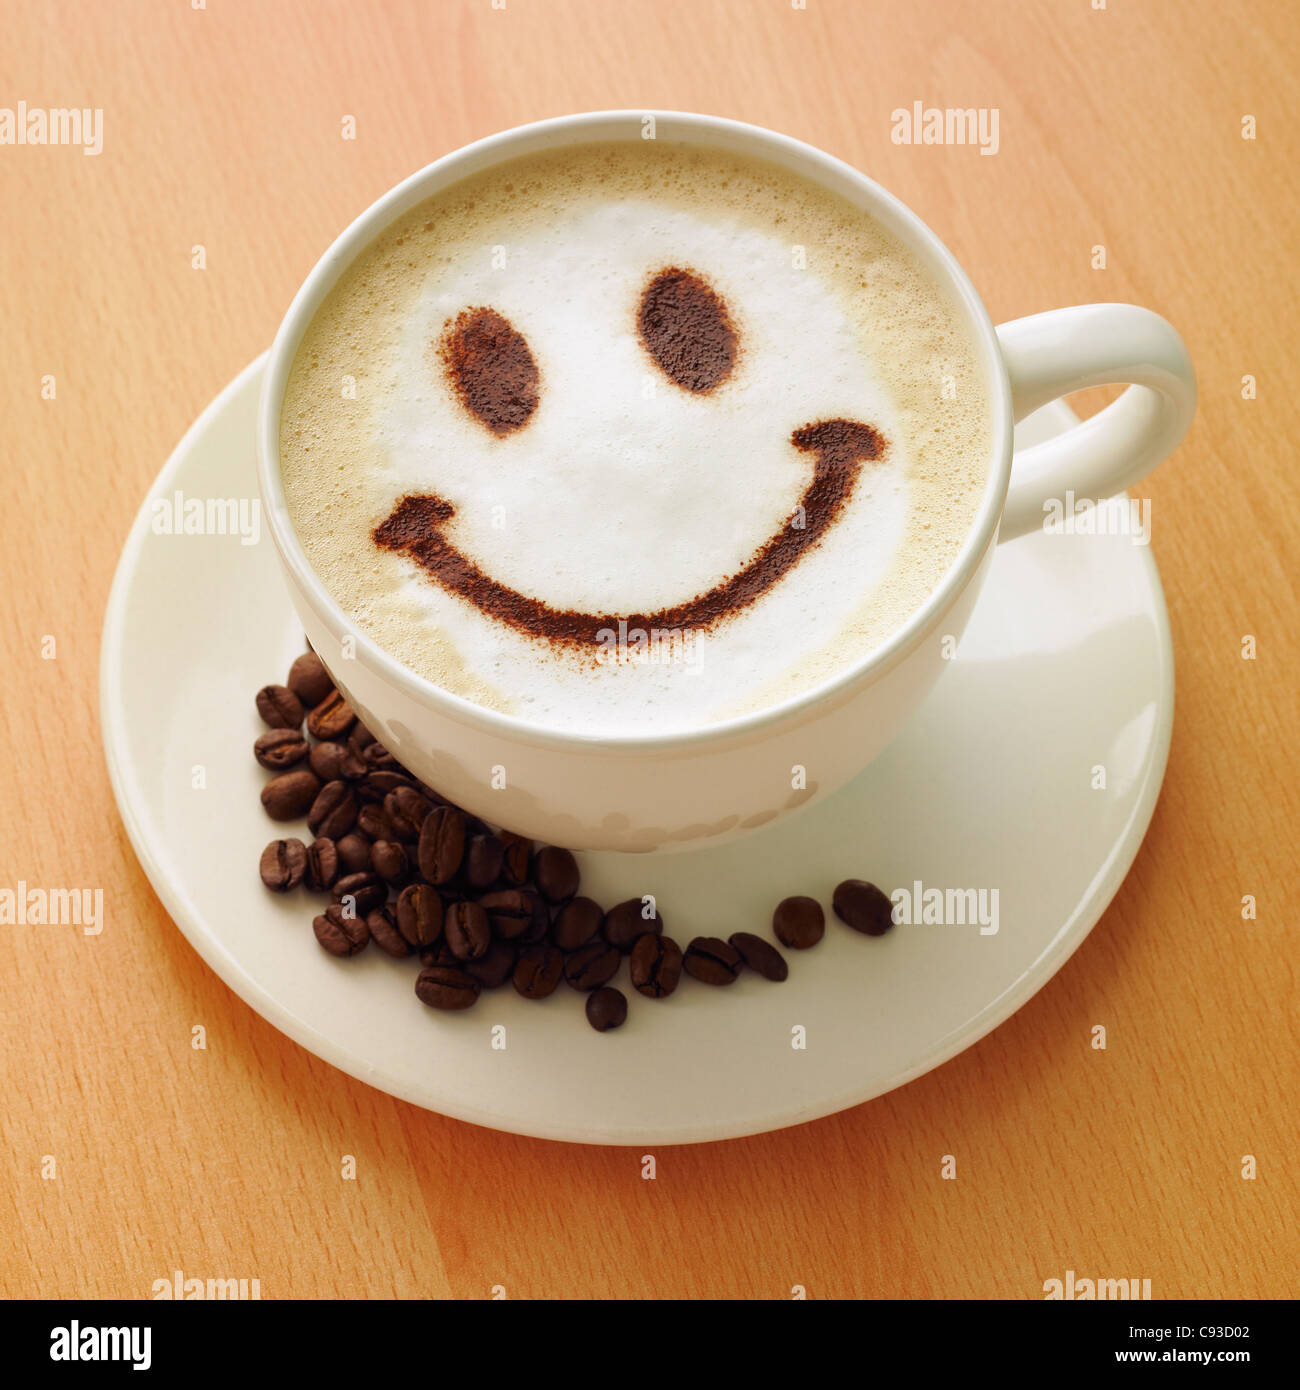 Cappuccino avec un chocolat en poudre smiley face sur le dessus et les grains de café sur la soucoupe. Banque D'Images